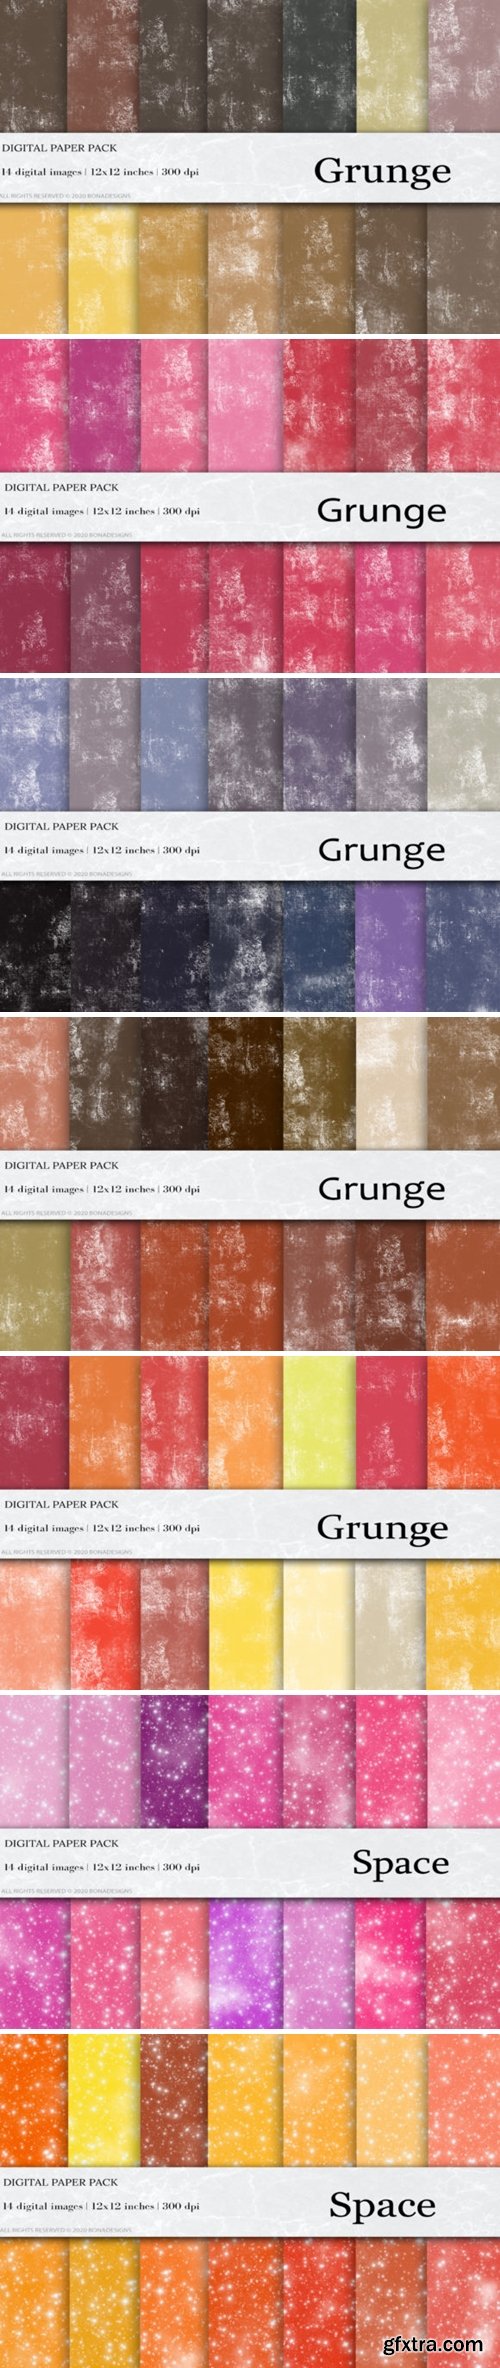 Grunge Digital Paper Bundle